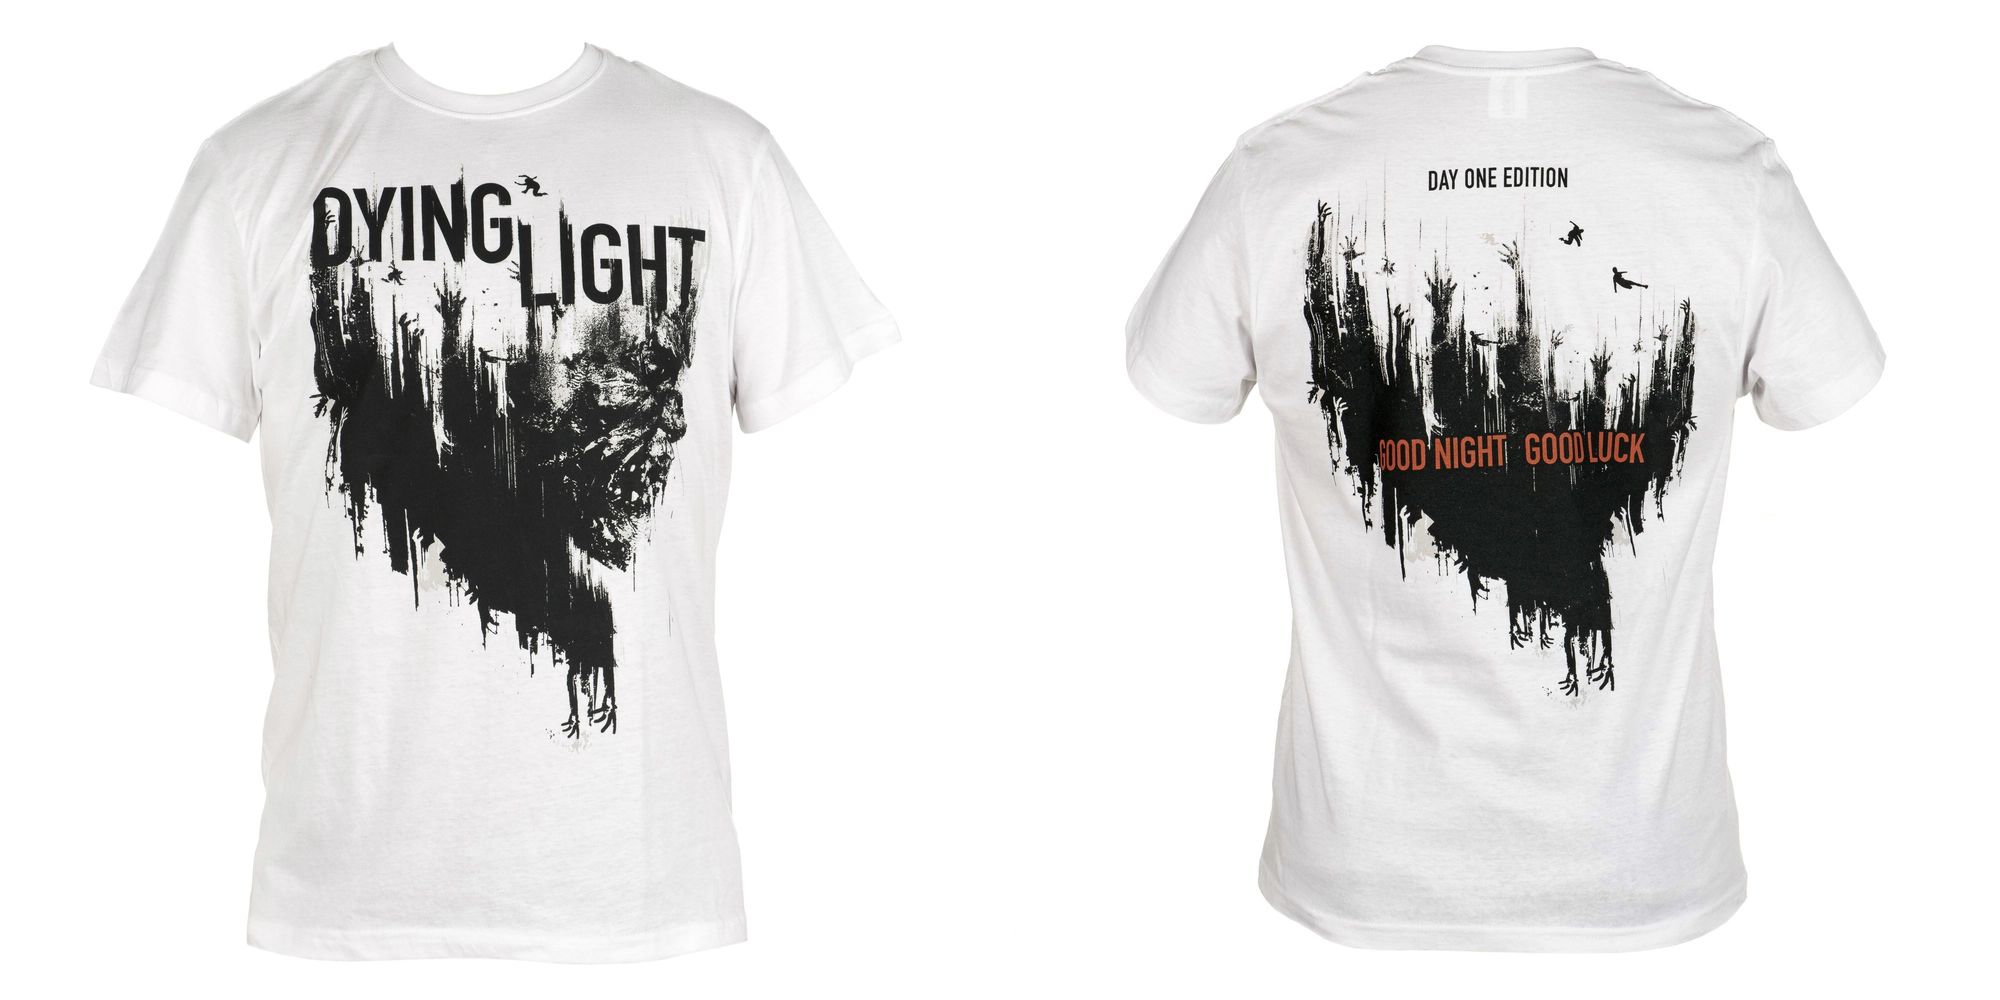 Dying Light Фирменная футболка +3 компьютерные лицензионные игры в подарок по акции!* 